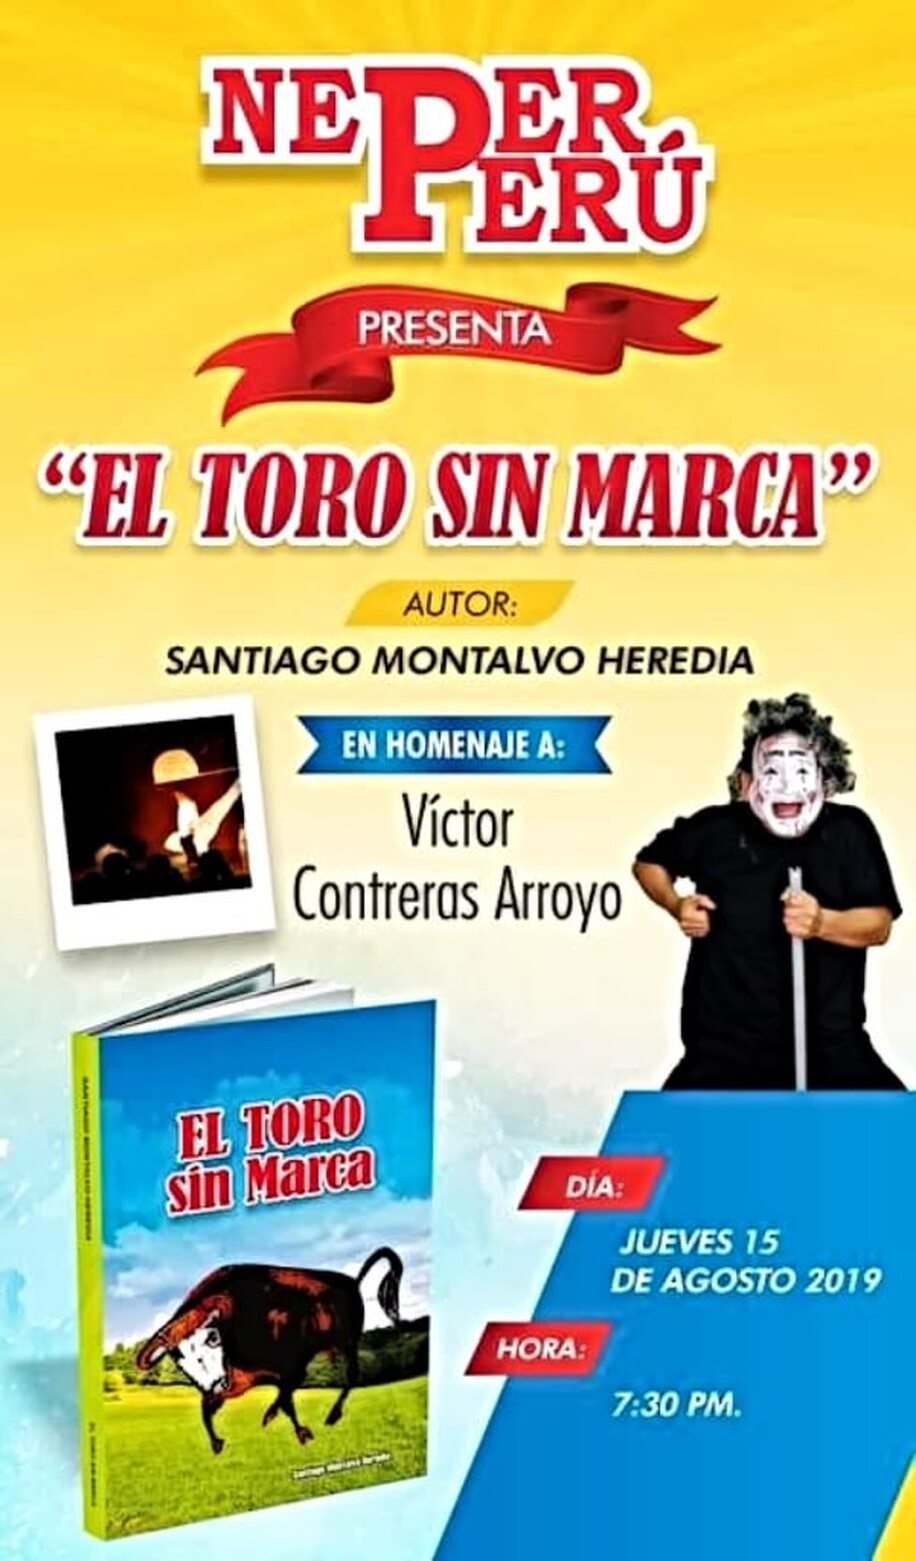 15 DE AGOSTO: PRESENTACIÓN DEL LIBRO “EL TORO SIN MARCA” EN HOMENAJE A VÍCTOR CONTRERAS ARROYO